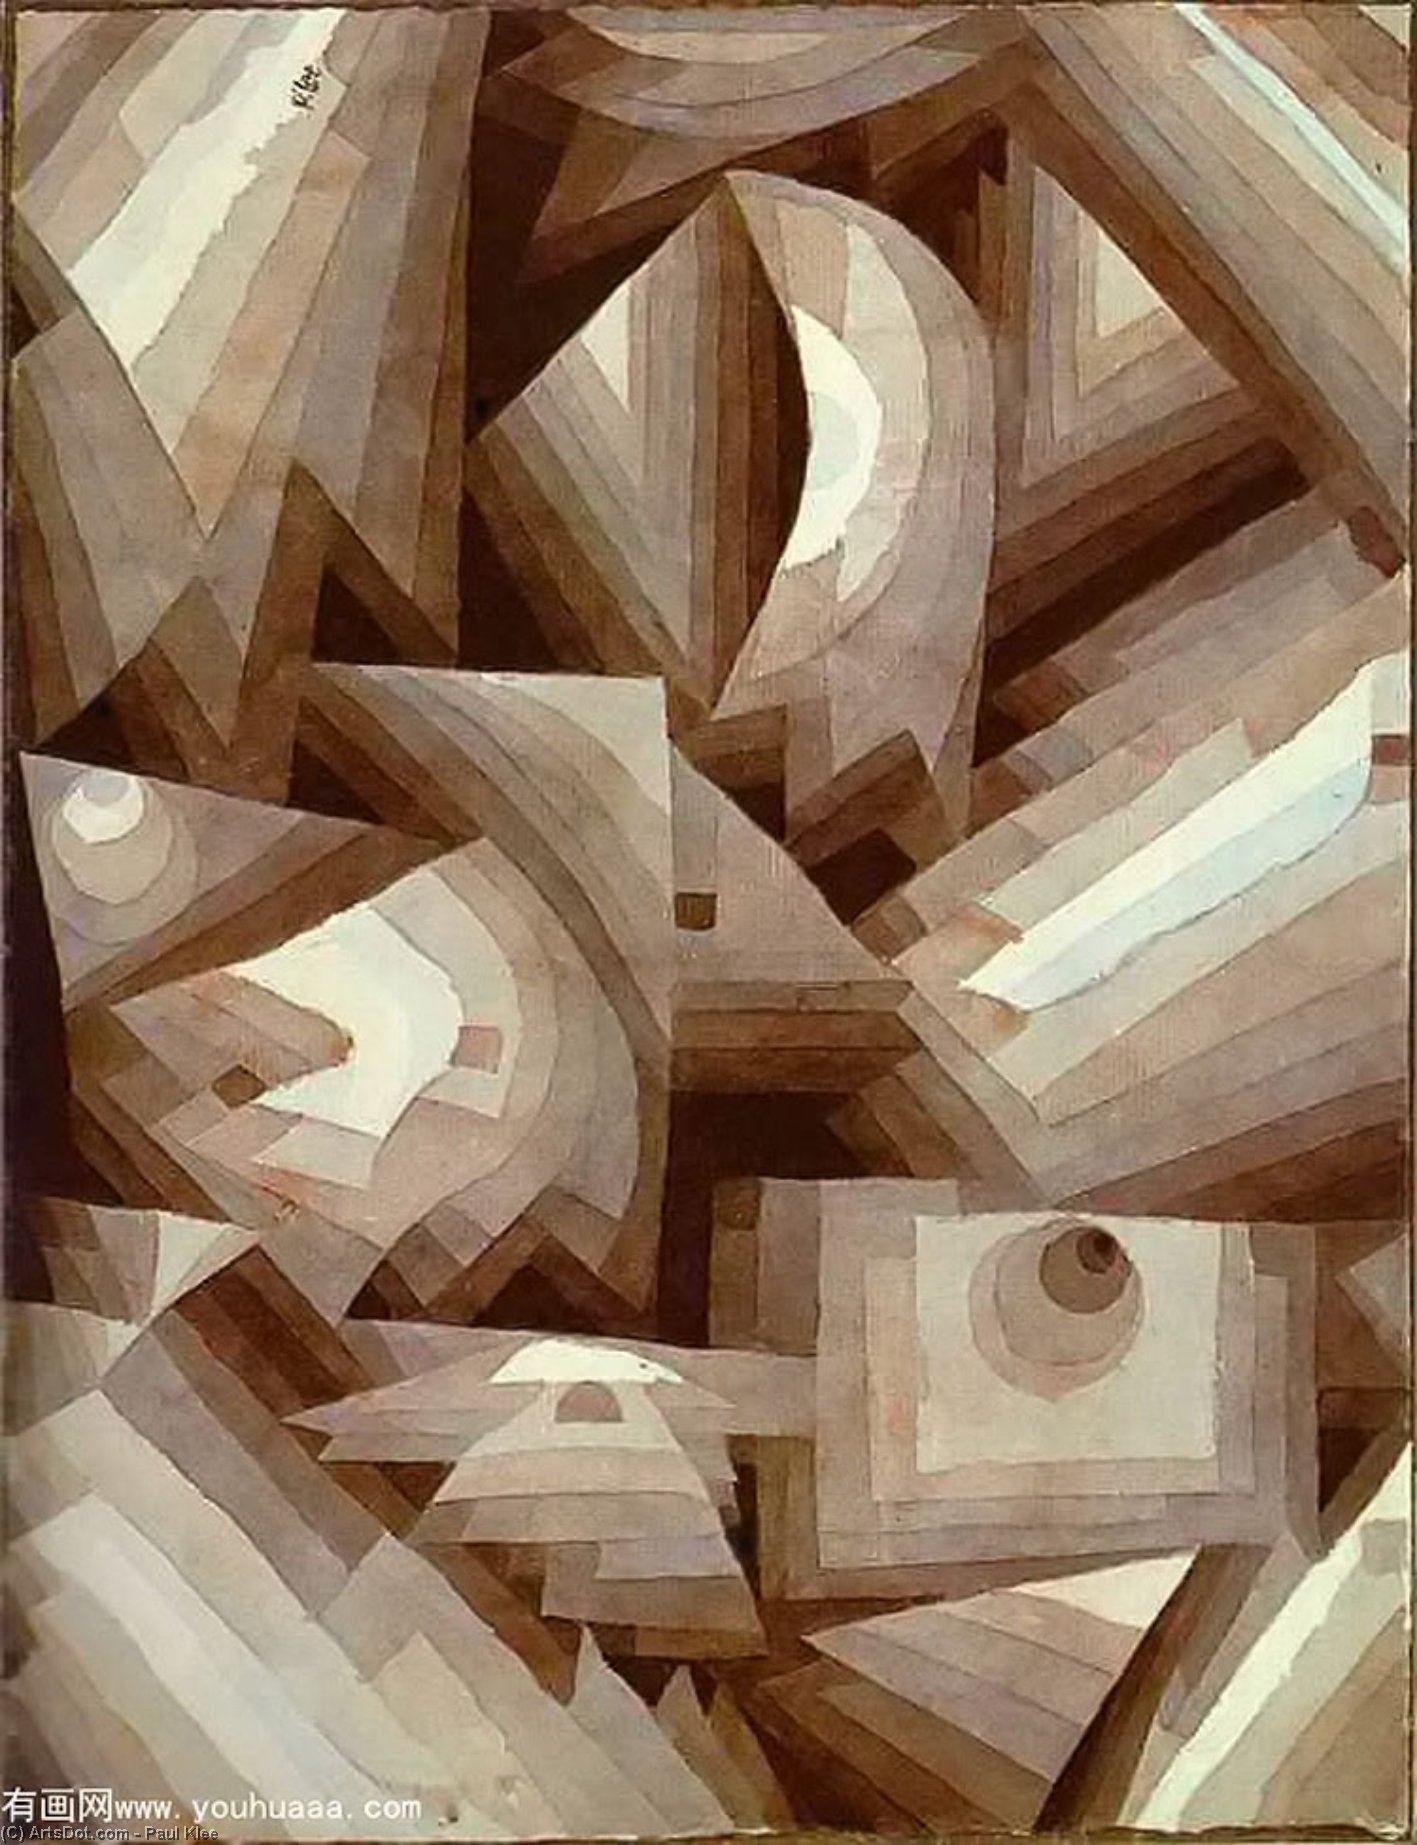 WikiOO.org - Encyclopedia of Fine Arts - Lukisan, Artwork Paul Klee - Crystal